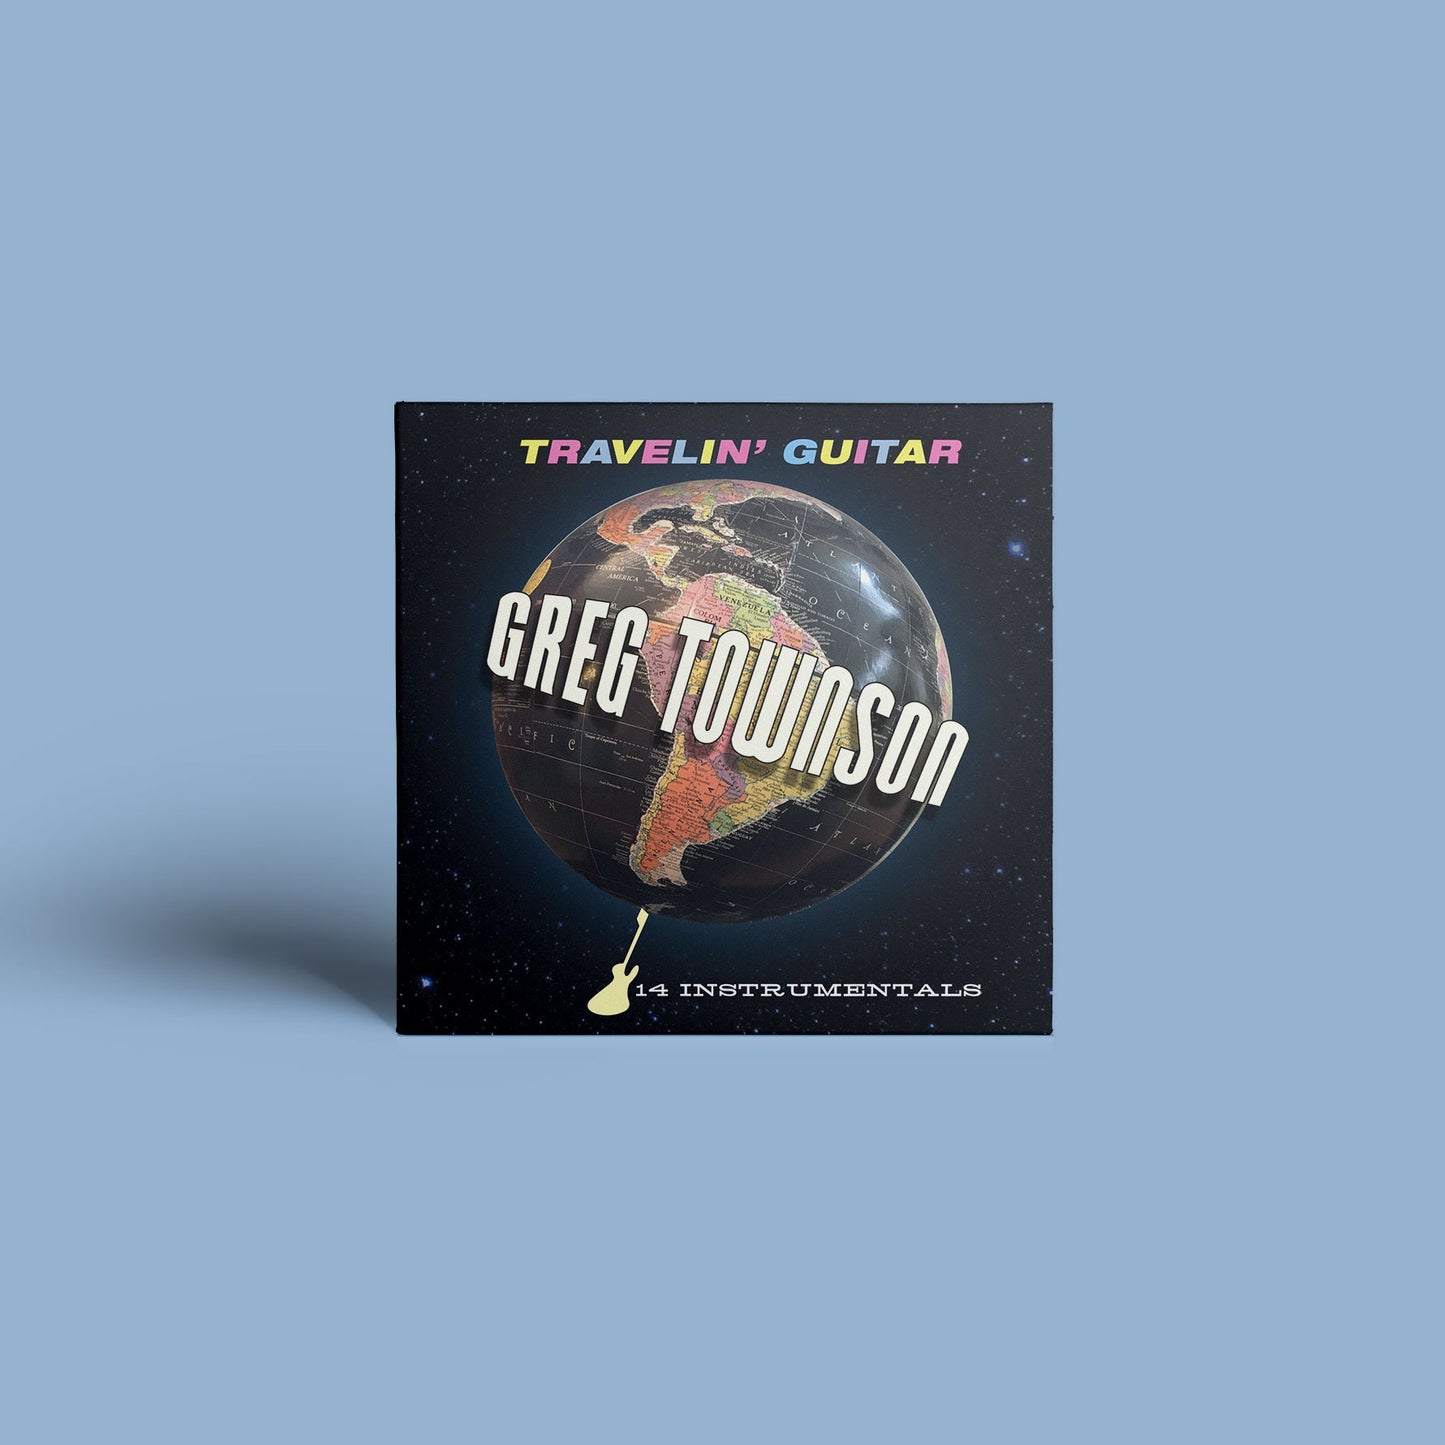 Greg Townson "Travelin' Guitar" CD